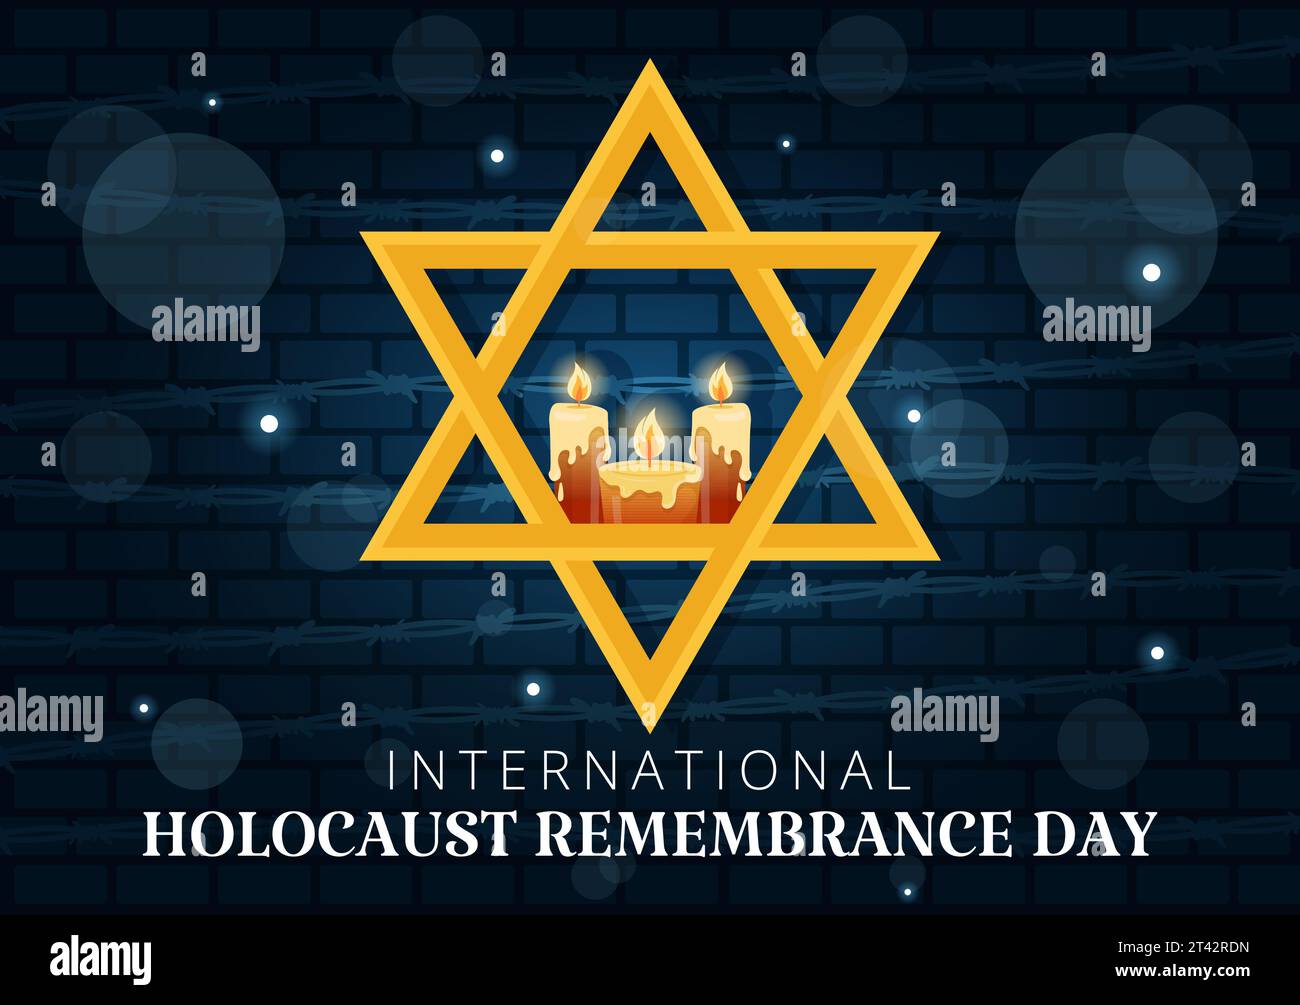 Internationaler Holocaust-Gedenktag Vektor-Illustration am 27. Januar mit gelbem Stern und Kerze zum Gedenken an die Opfer in flachem Hintergrund Stock Vektor